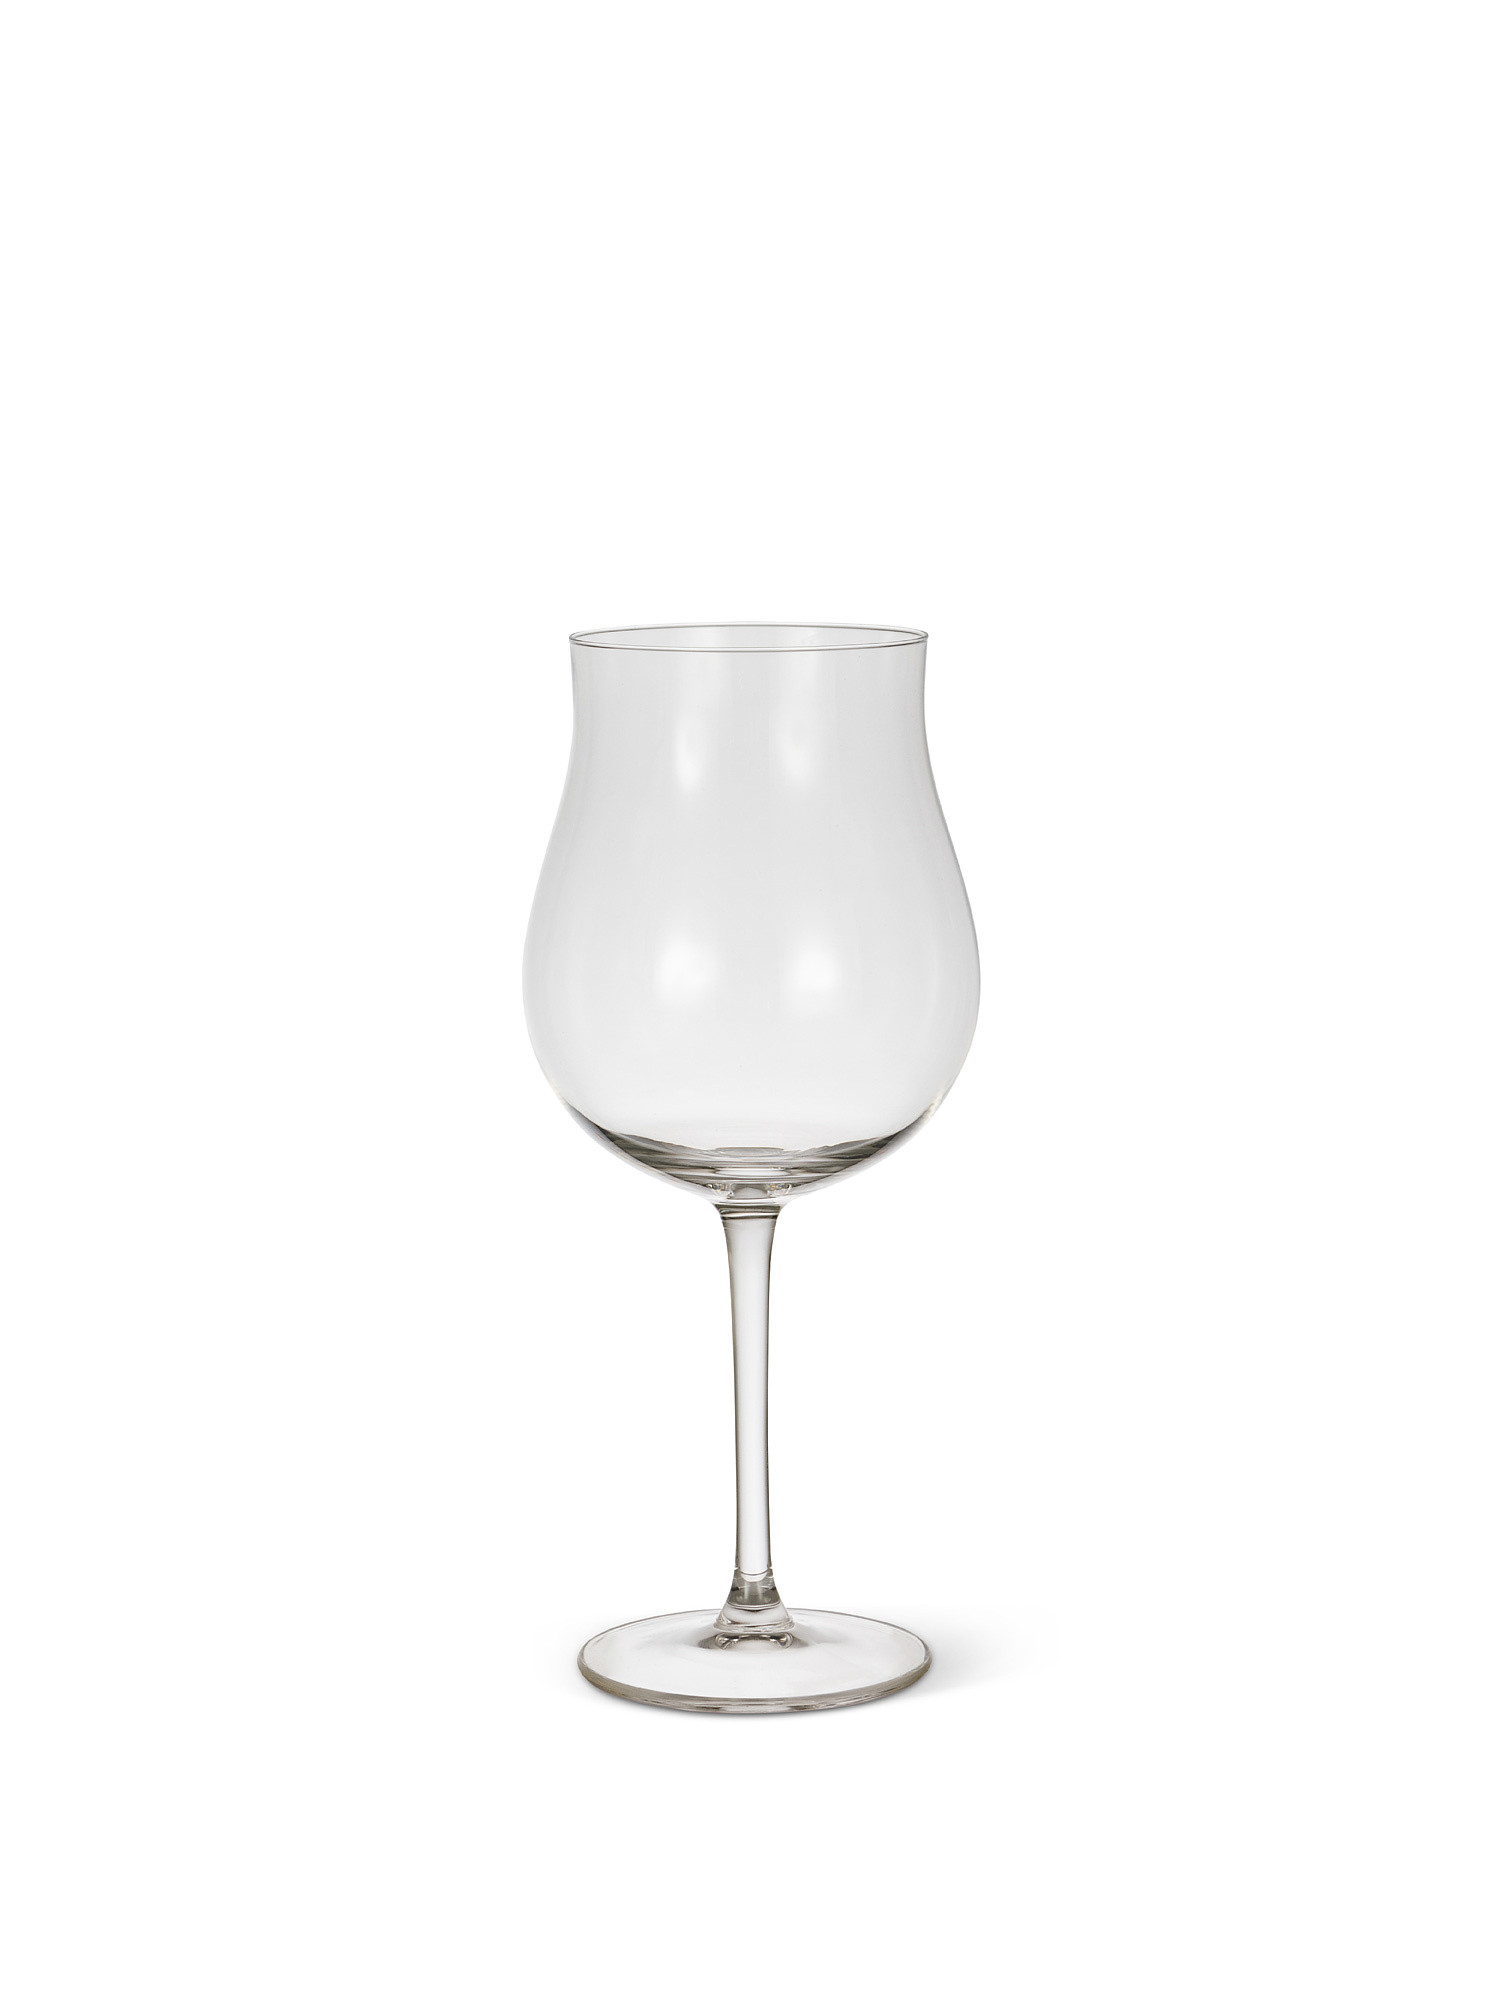 Set of 6 wine glasses 64cl, Transparent, large image number 1